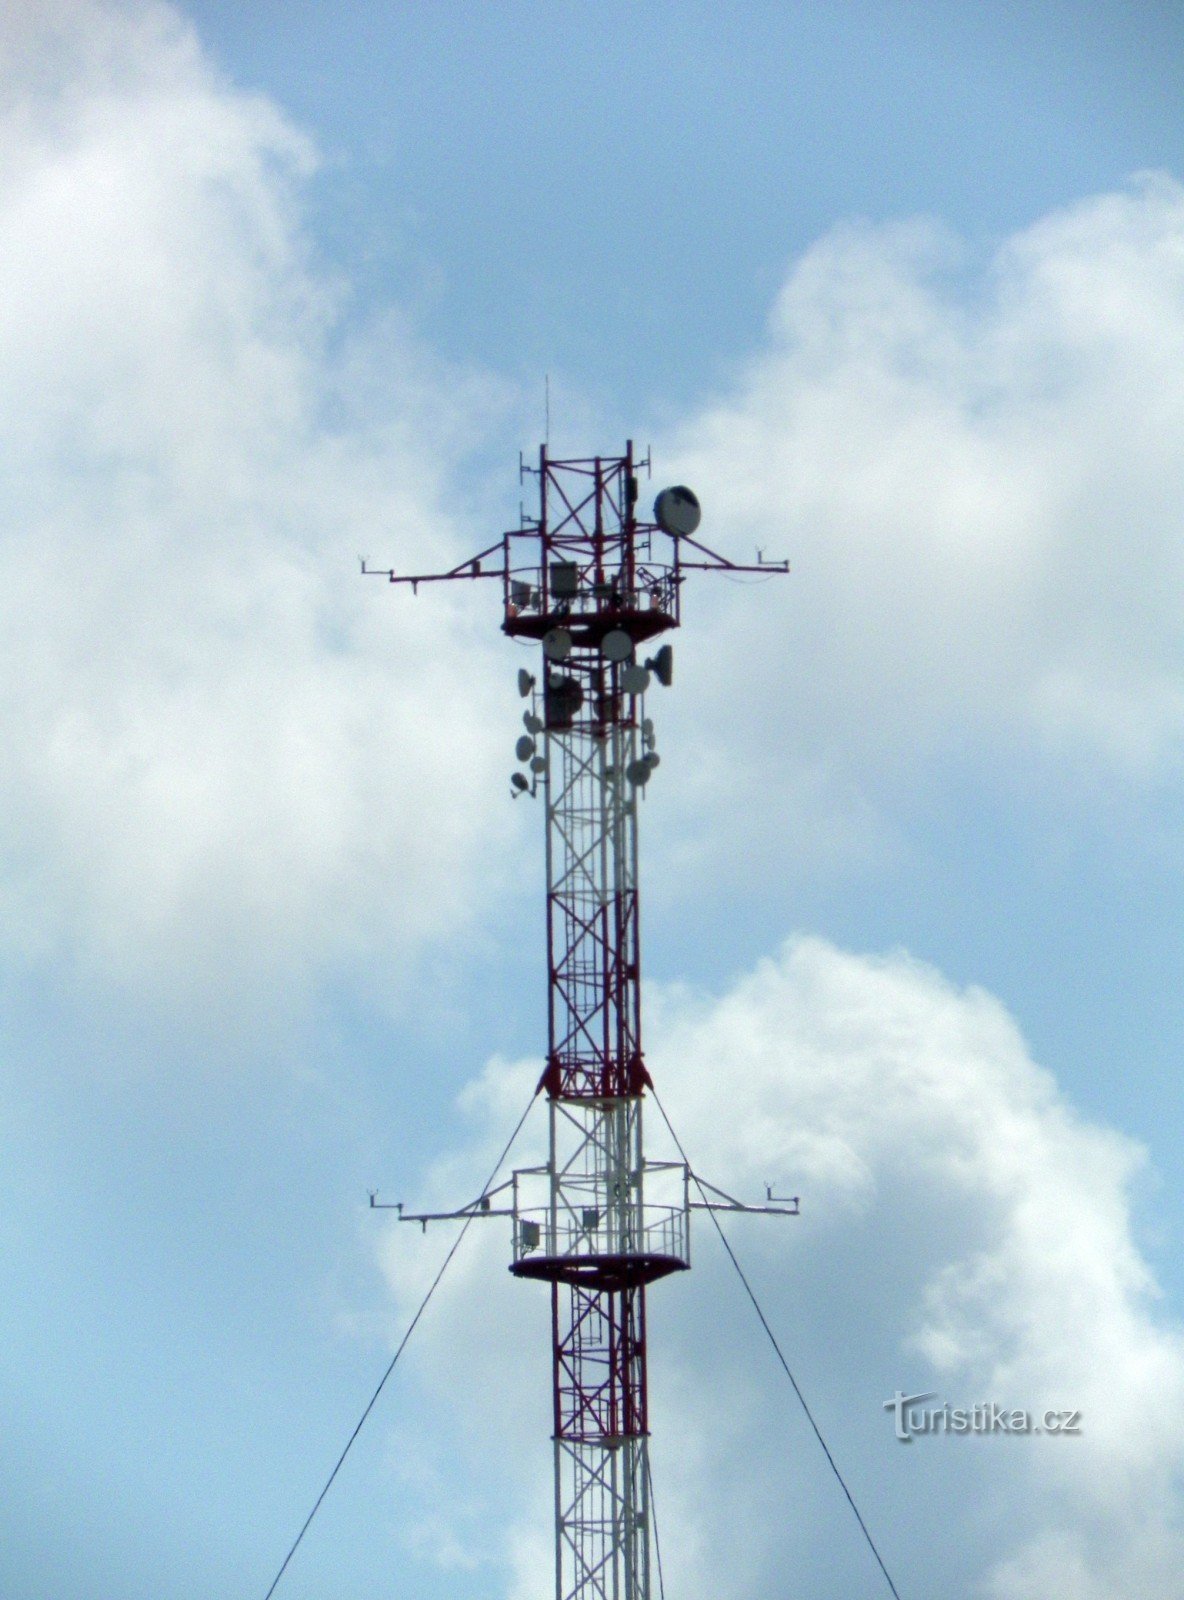 Деталь верхней части мачты с веб-камерой, метеодатчиками и телекоммуникационными антеннами.